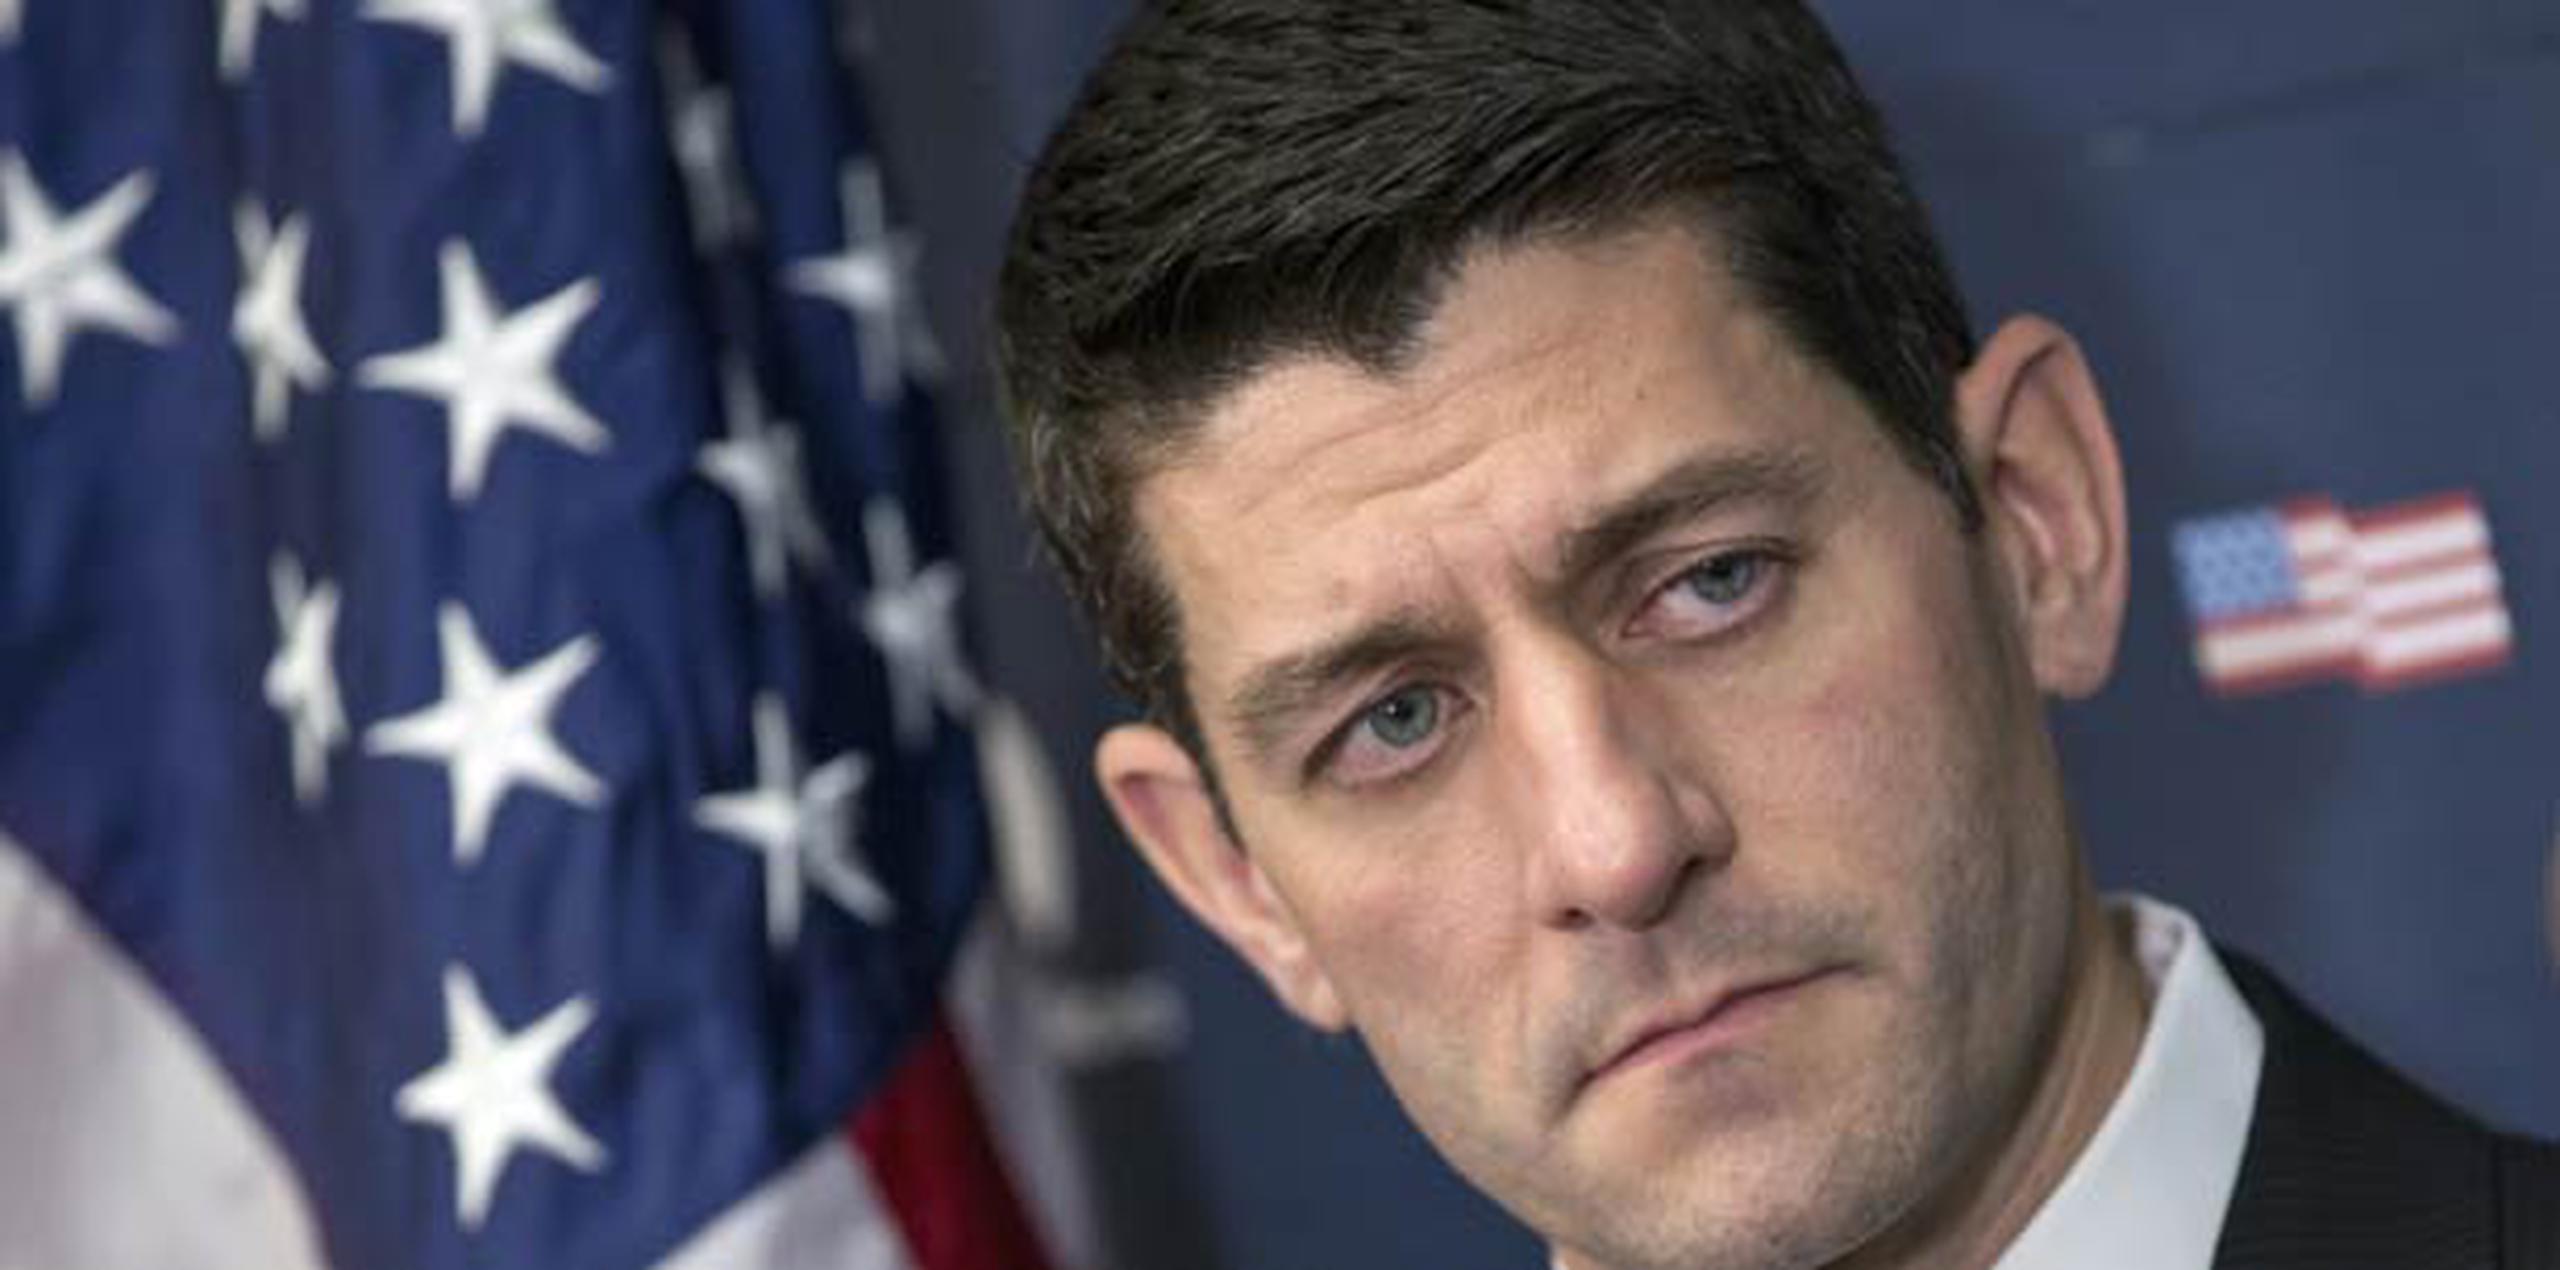 "Estamos confrontando al presidente con la verdad dura y honesta", dijo el presidente de la cámara baja, Paul Ryan. (AP/J. Scott Applewhite)